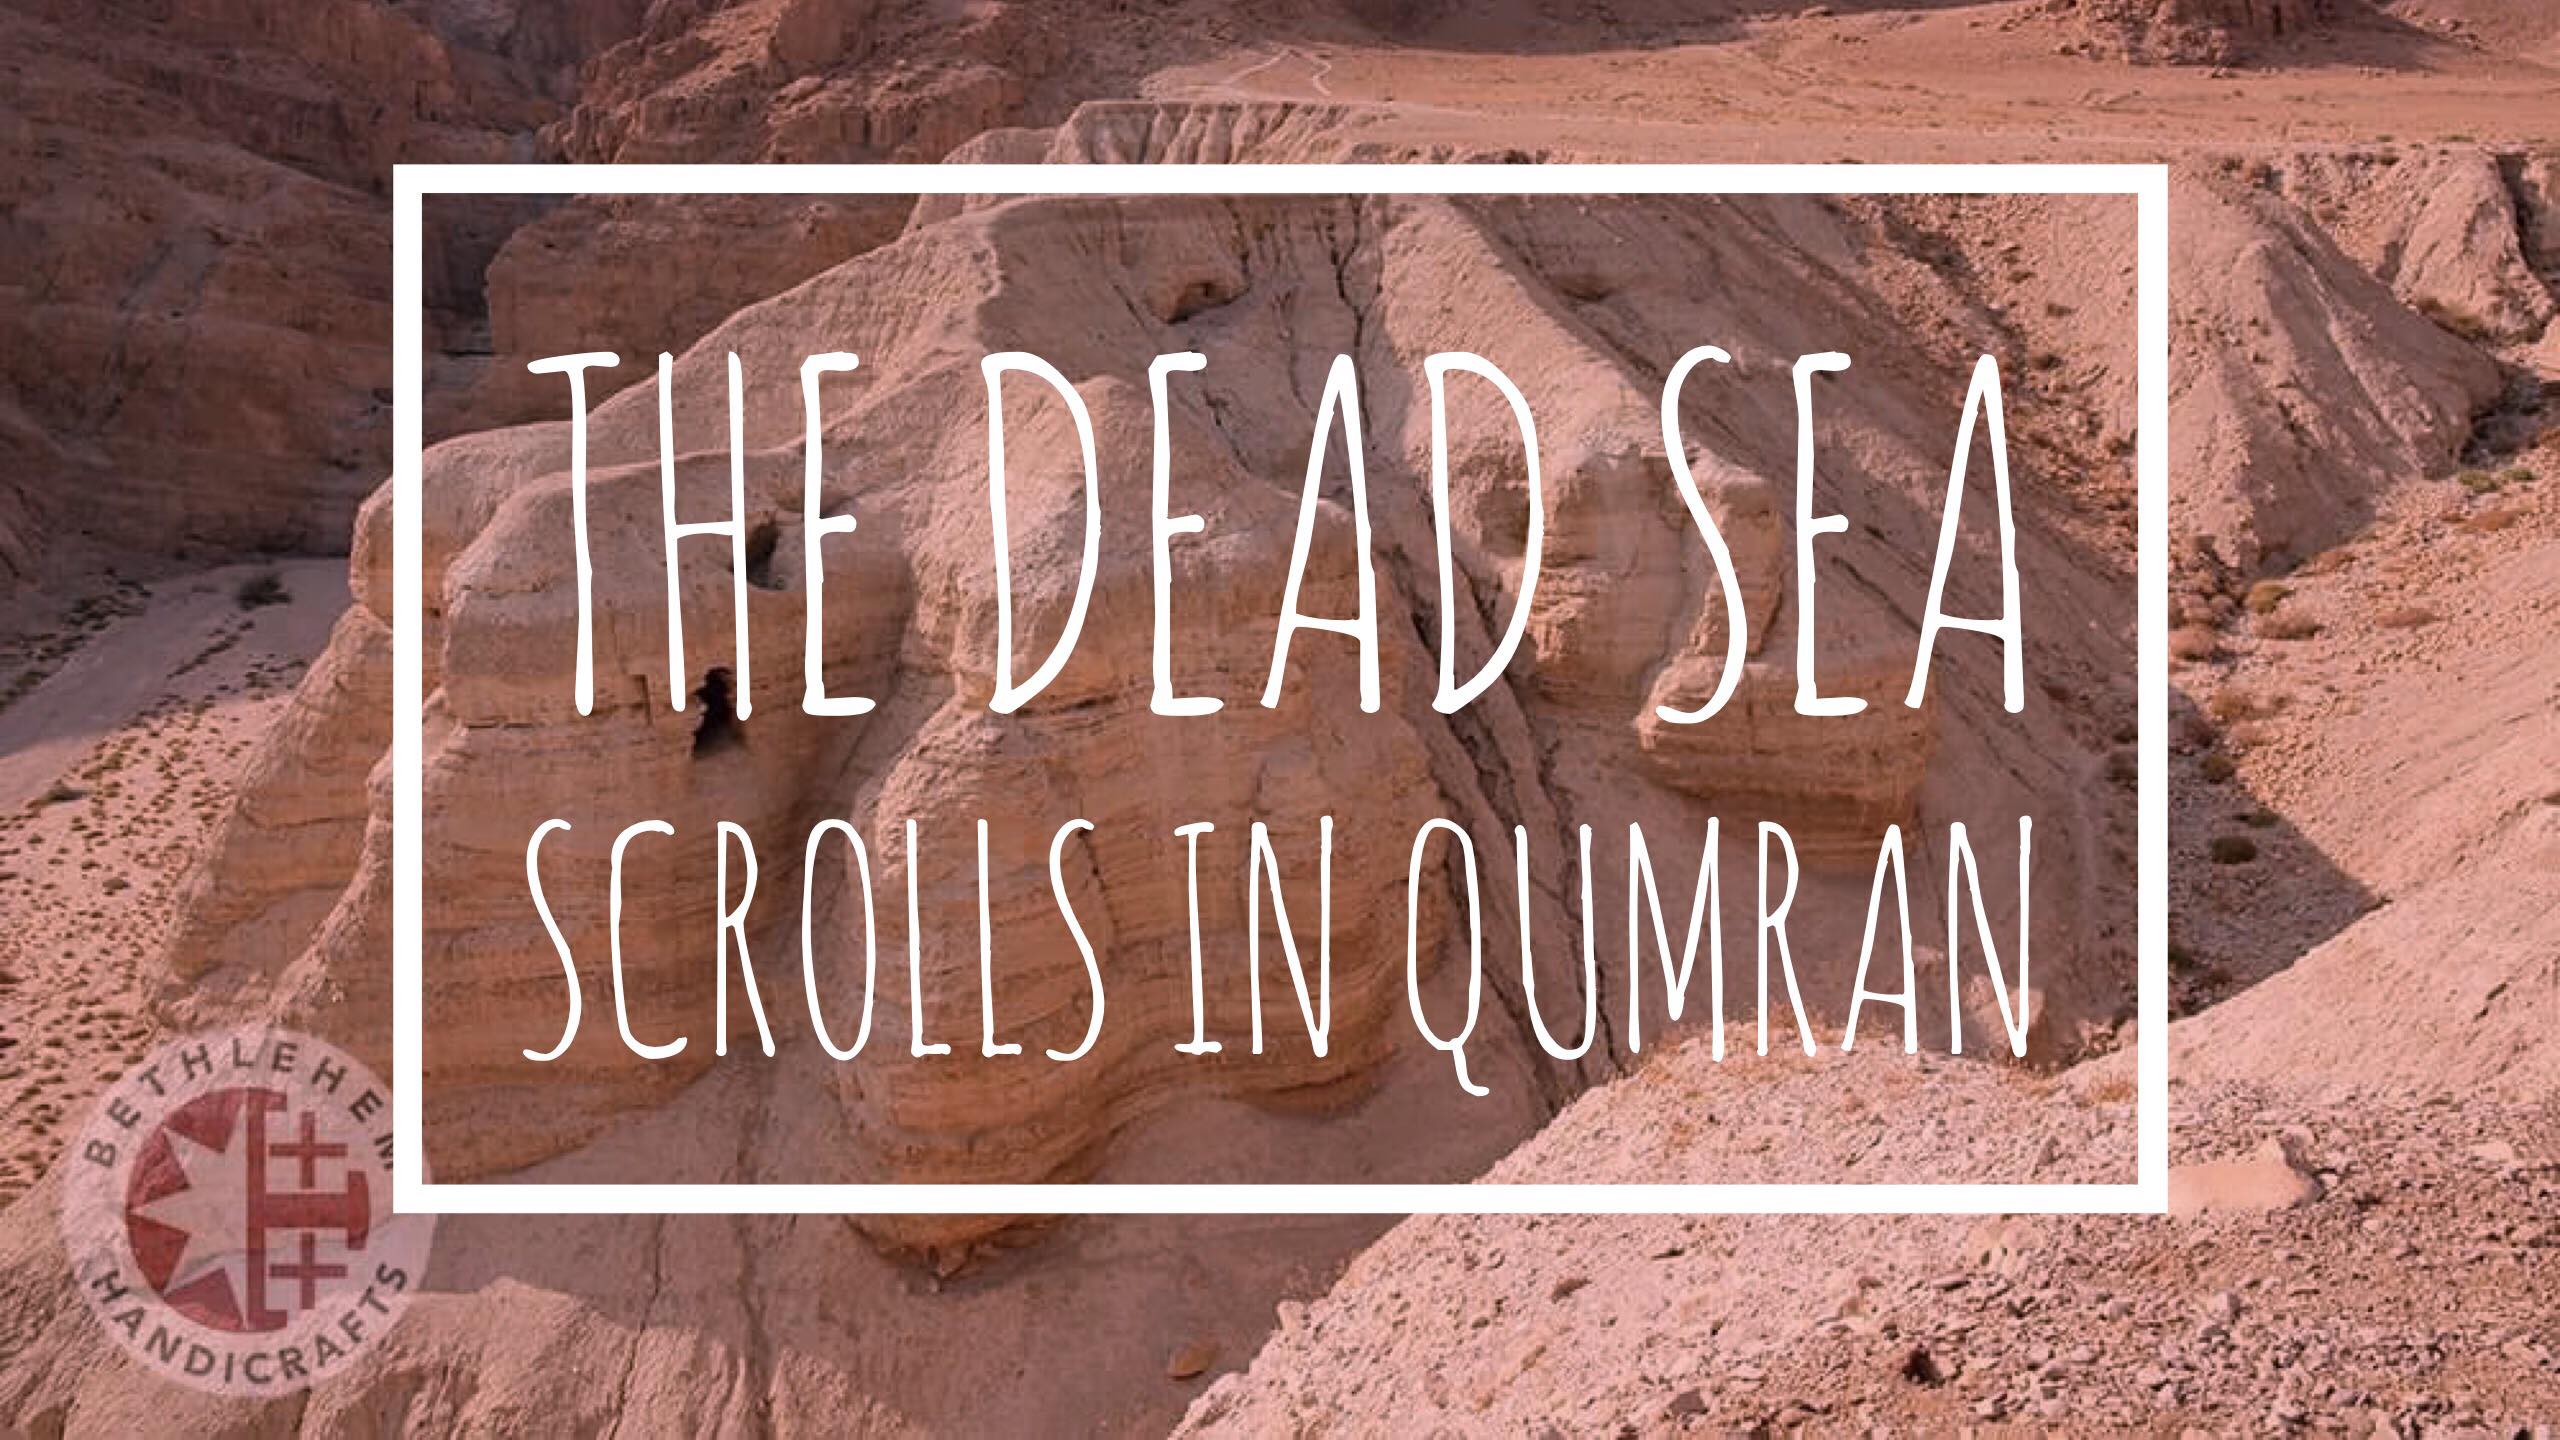 The Dead Sea Scrolls in Qumran